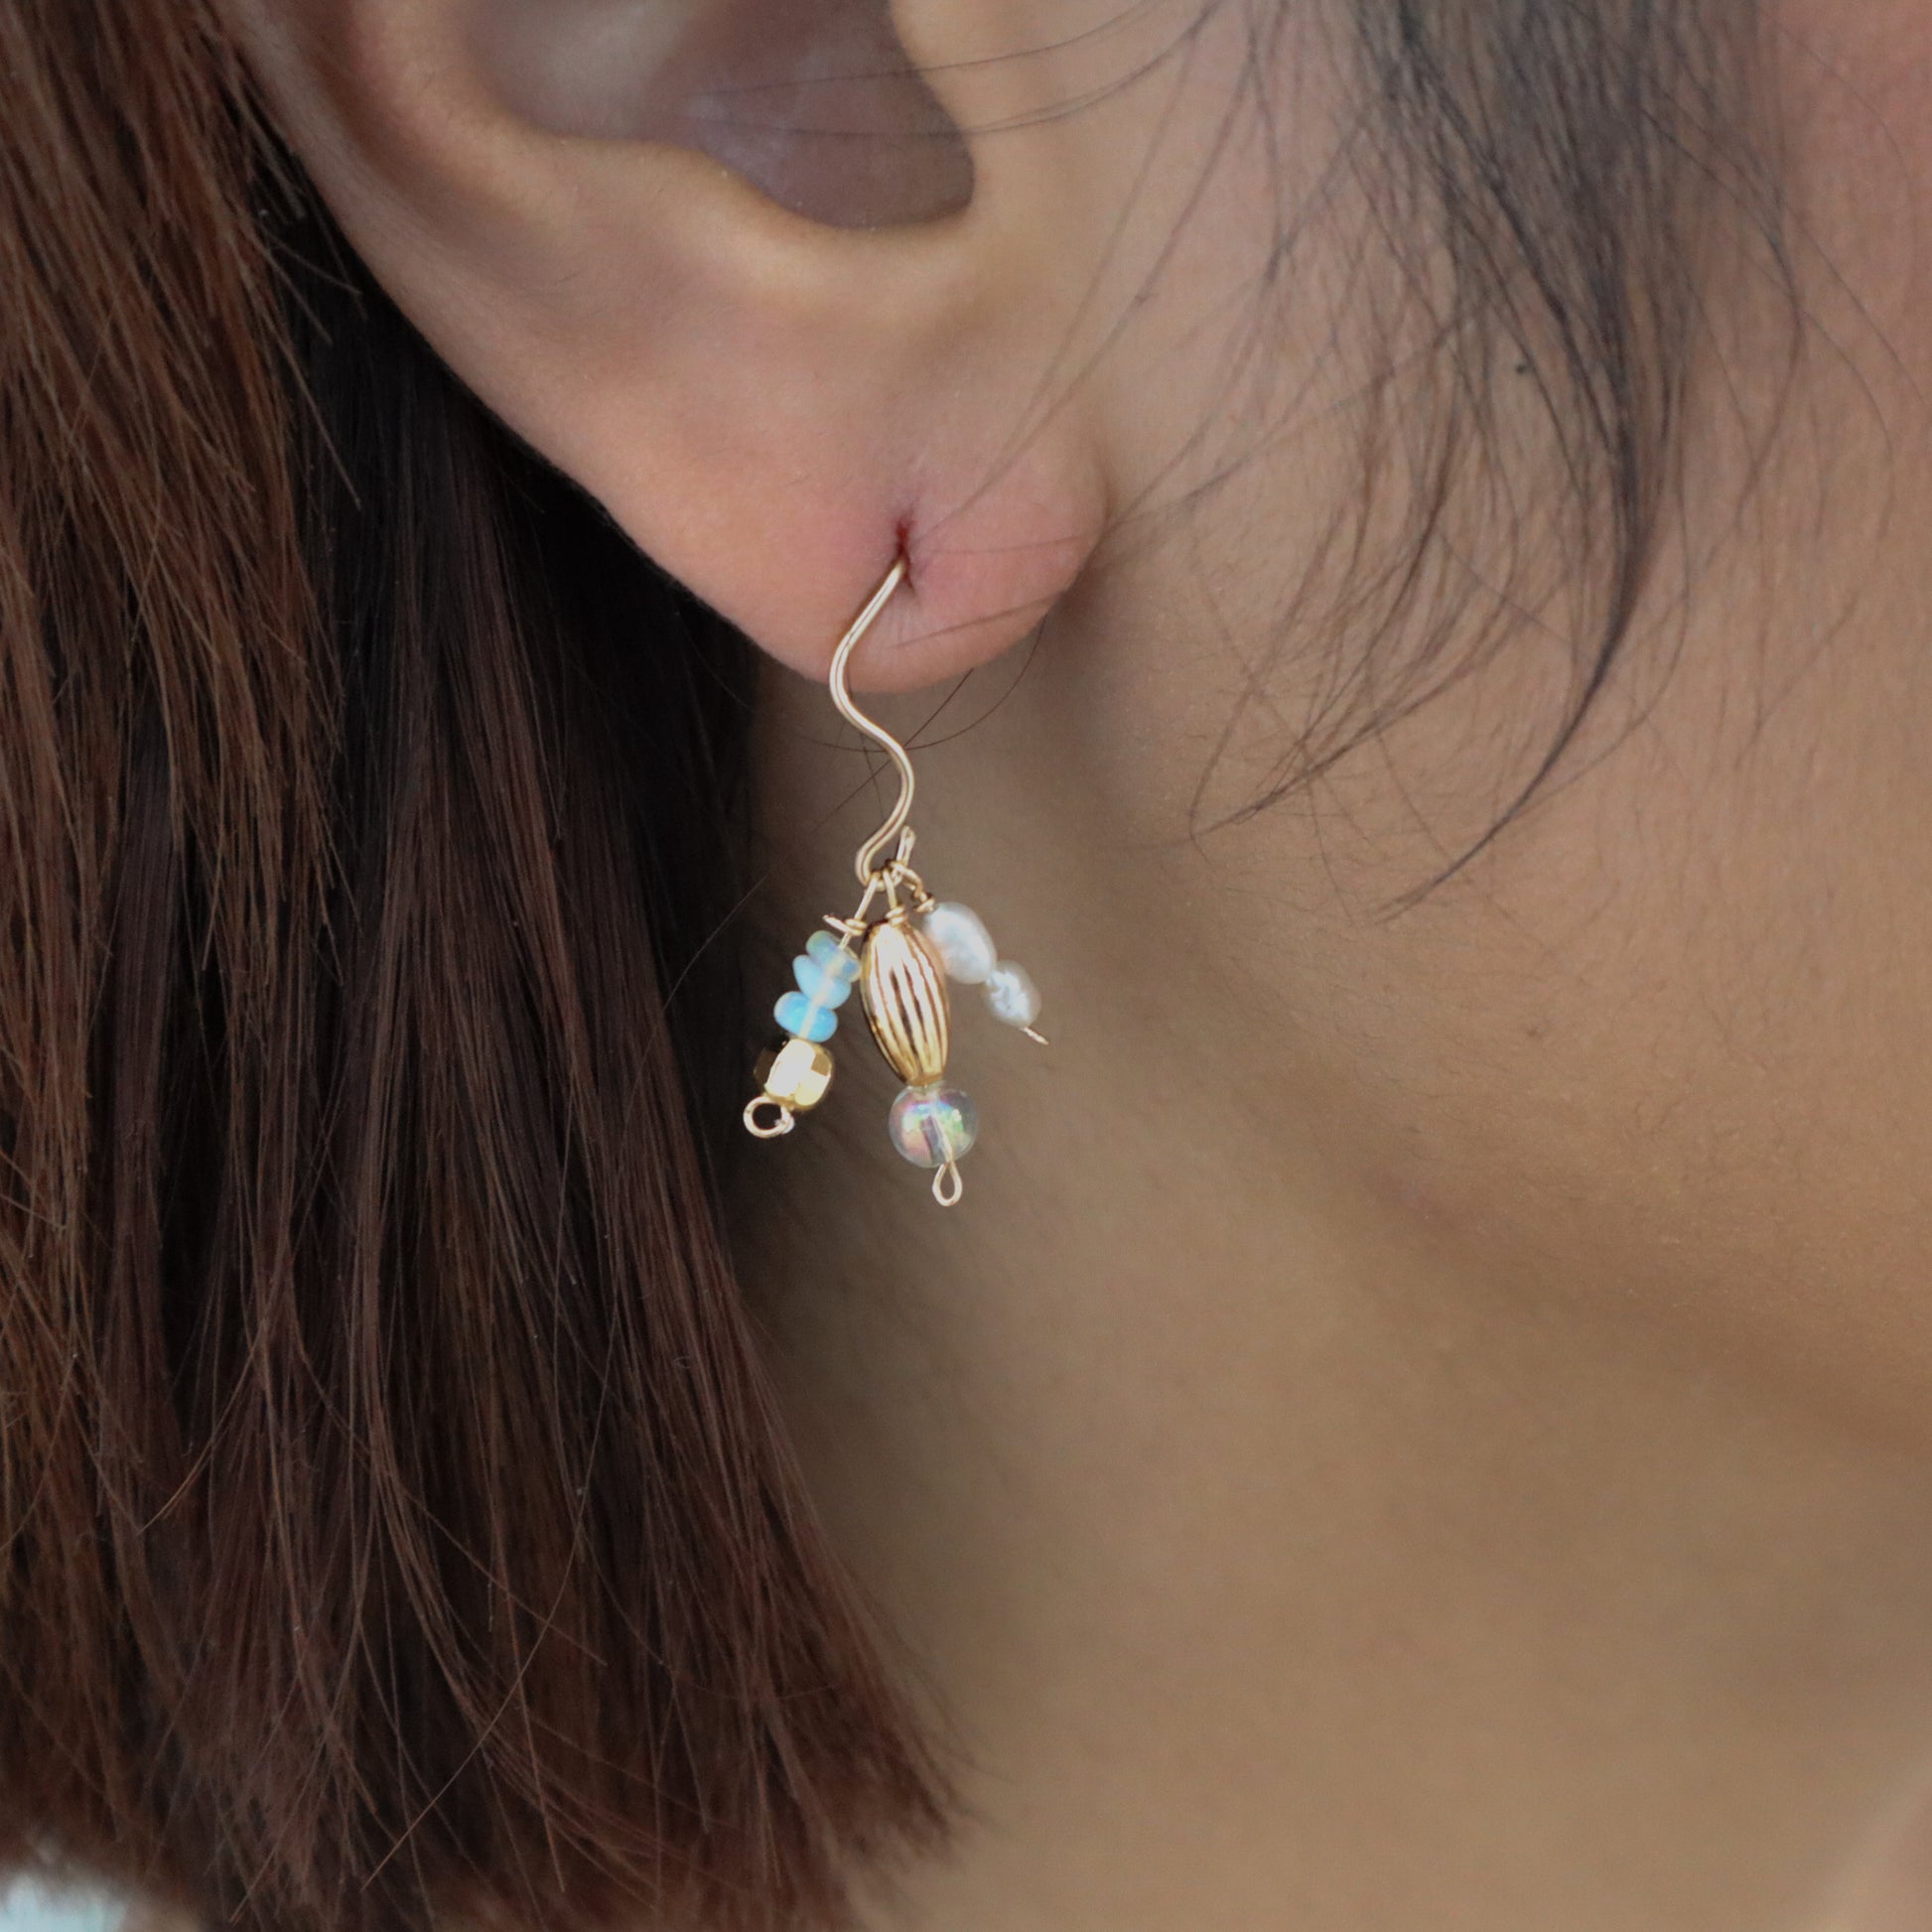 Roop Jewelry twinkle earrings in soirée pearl. Handmade jewelry in Oakland, Ca.